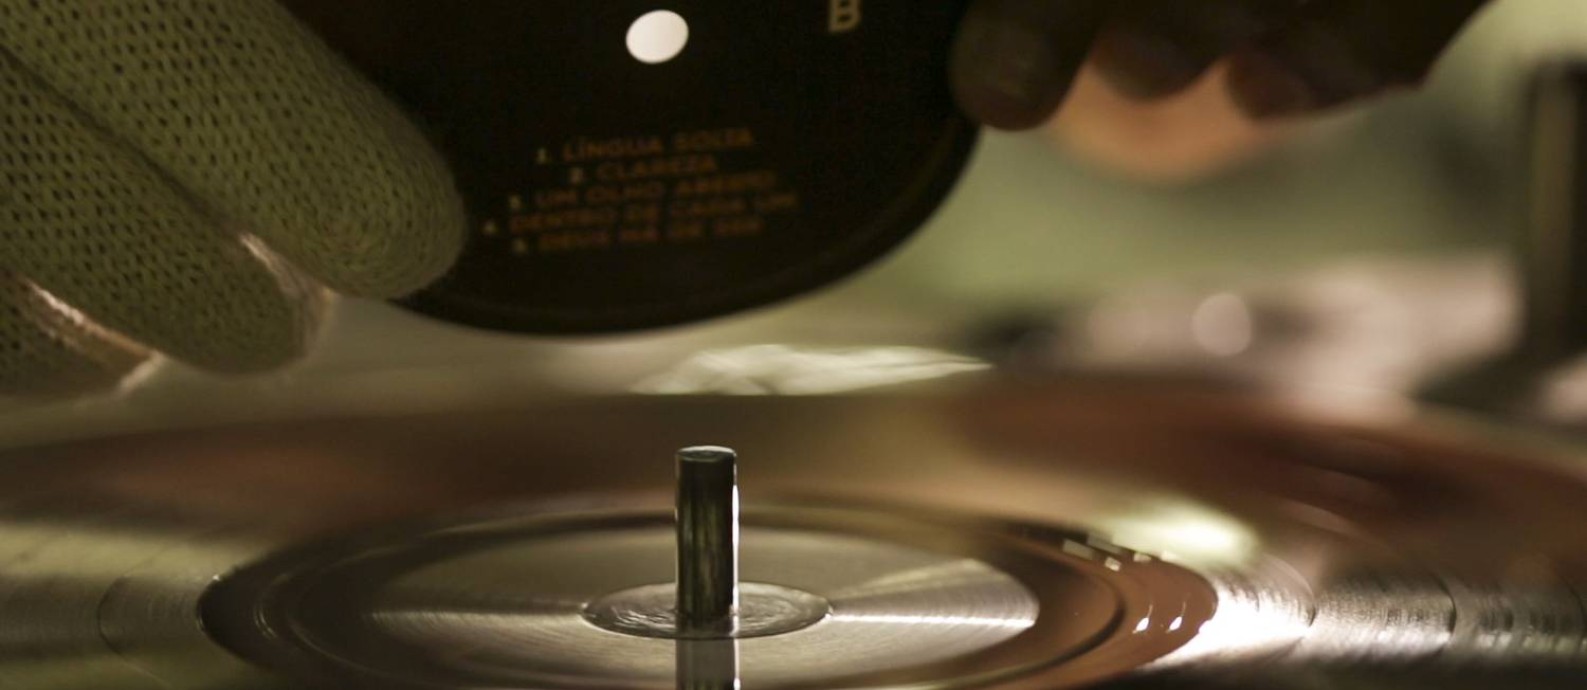 Vinil 70 anos: veja como a Polysom fabrica discos de vinil em Belford Roxo Foto: Fernando Lemos